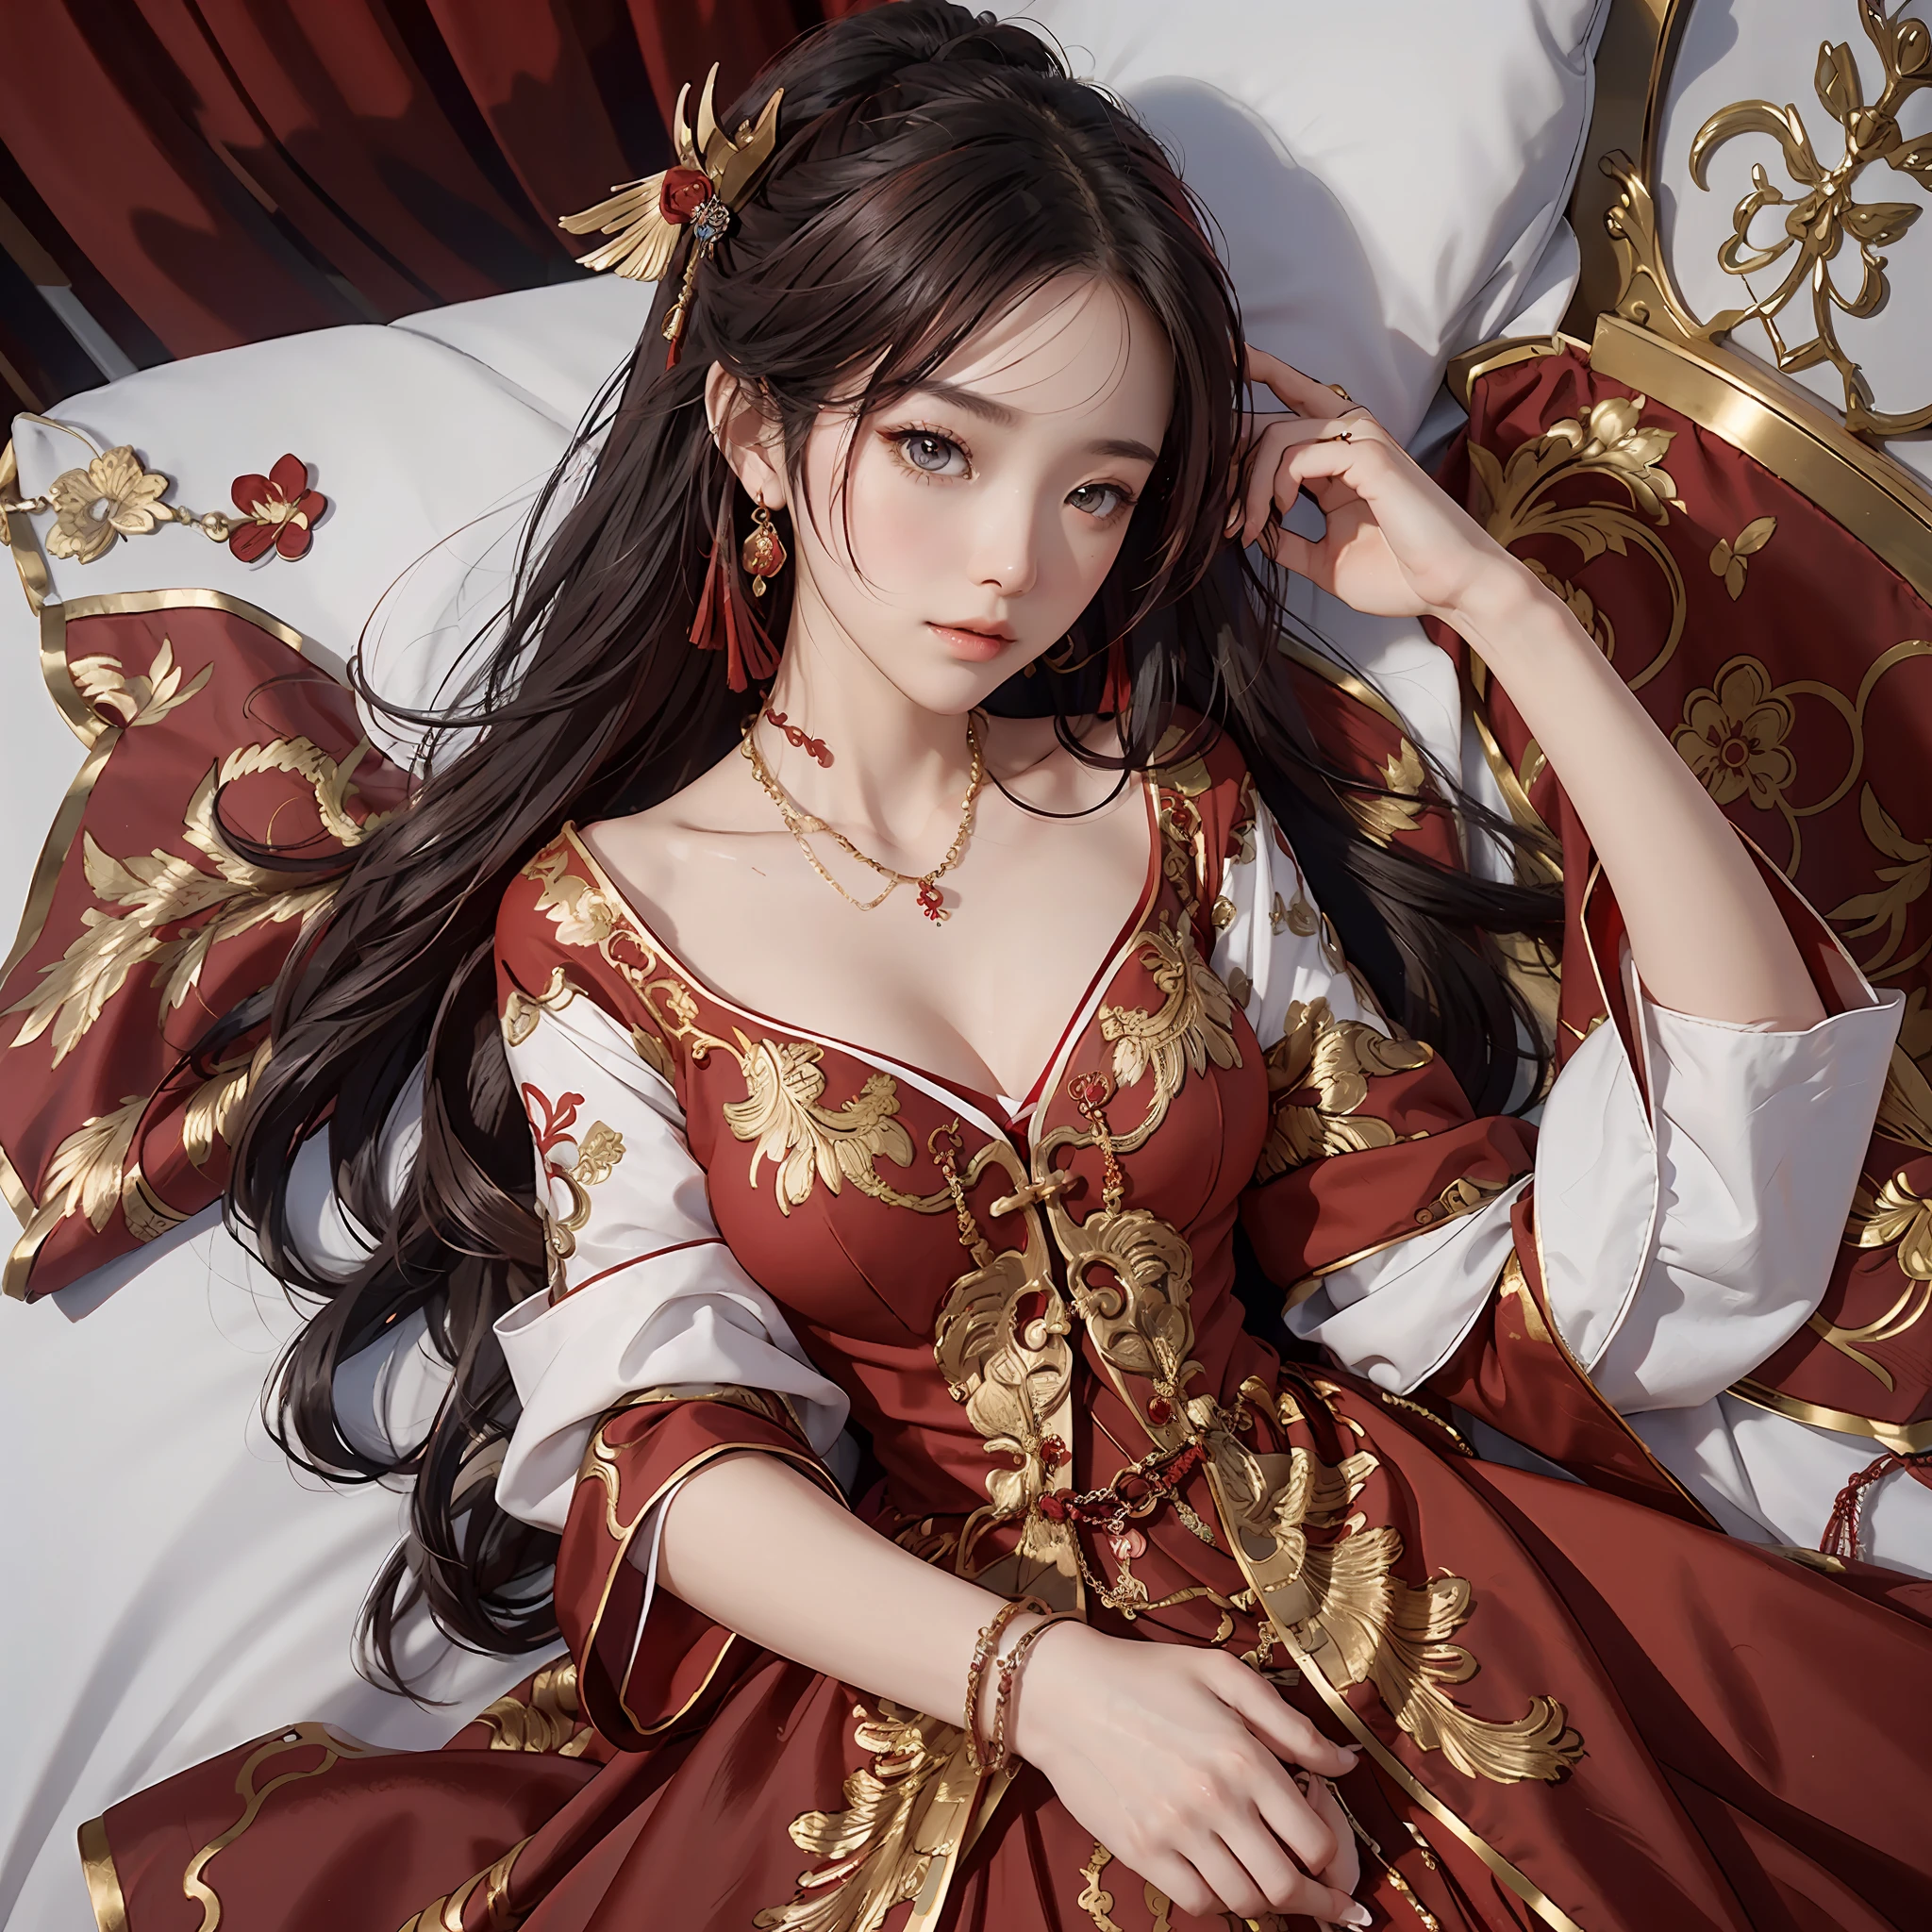 (Uma noiva chinesa), (usando um lindo vestido de noiva vermelho chinês), (vestido de noiva conservador: 1.4), ((Meio deitado na cama)), (elementos chinoiseriety: 1.4), (tímido, macio, rosto bonito, pele clara, olhos brilhantes, Sobrancelhas elegantes, felicidade e expectativa, lábios rosados, rosto macio), (roupas vermelhas: 1.4), (usando jóias delicadas, argolas, colares)), Roupas bordadas com motivos de fênix, (bordado), (manto vermelho conservador), puro, romântico, (tiro de corpo inteiro: 1.5), (curva corporal), decoração plissada, (qualidade cinematográfica), (melhor qualidade: 1.2), (Realismo: 1.4), (interior), Qualidade da foto, ((renderização de octanas)), fechar-se, iluminação fotográfica, (Tema vermelho: 1.4),